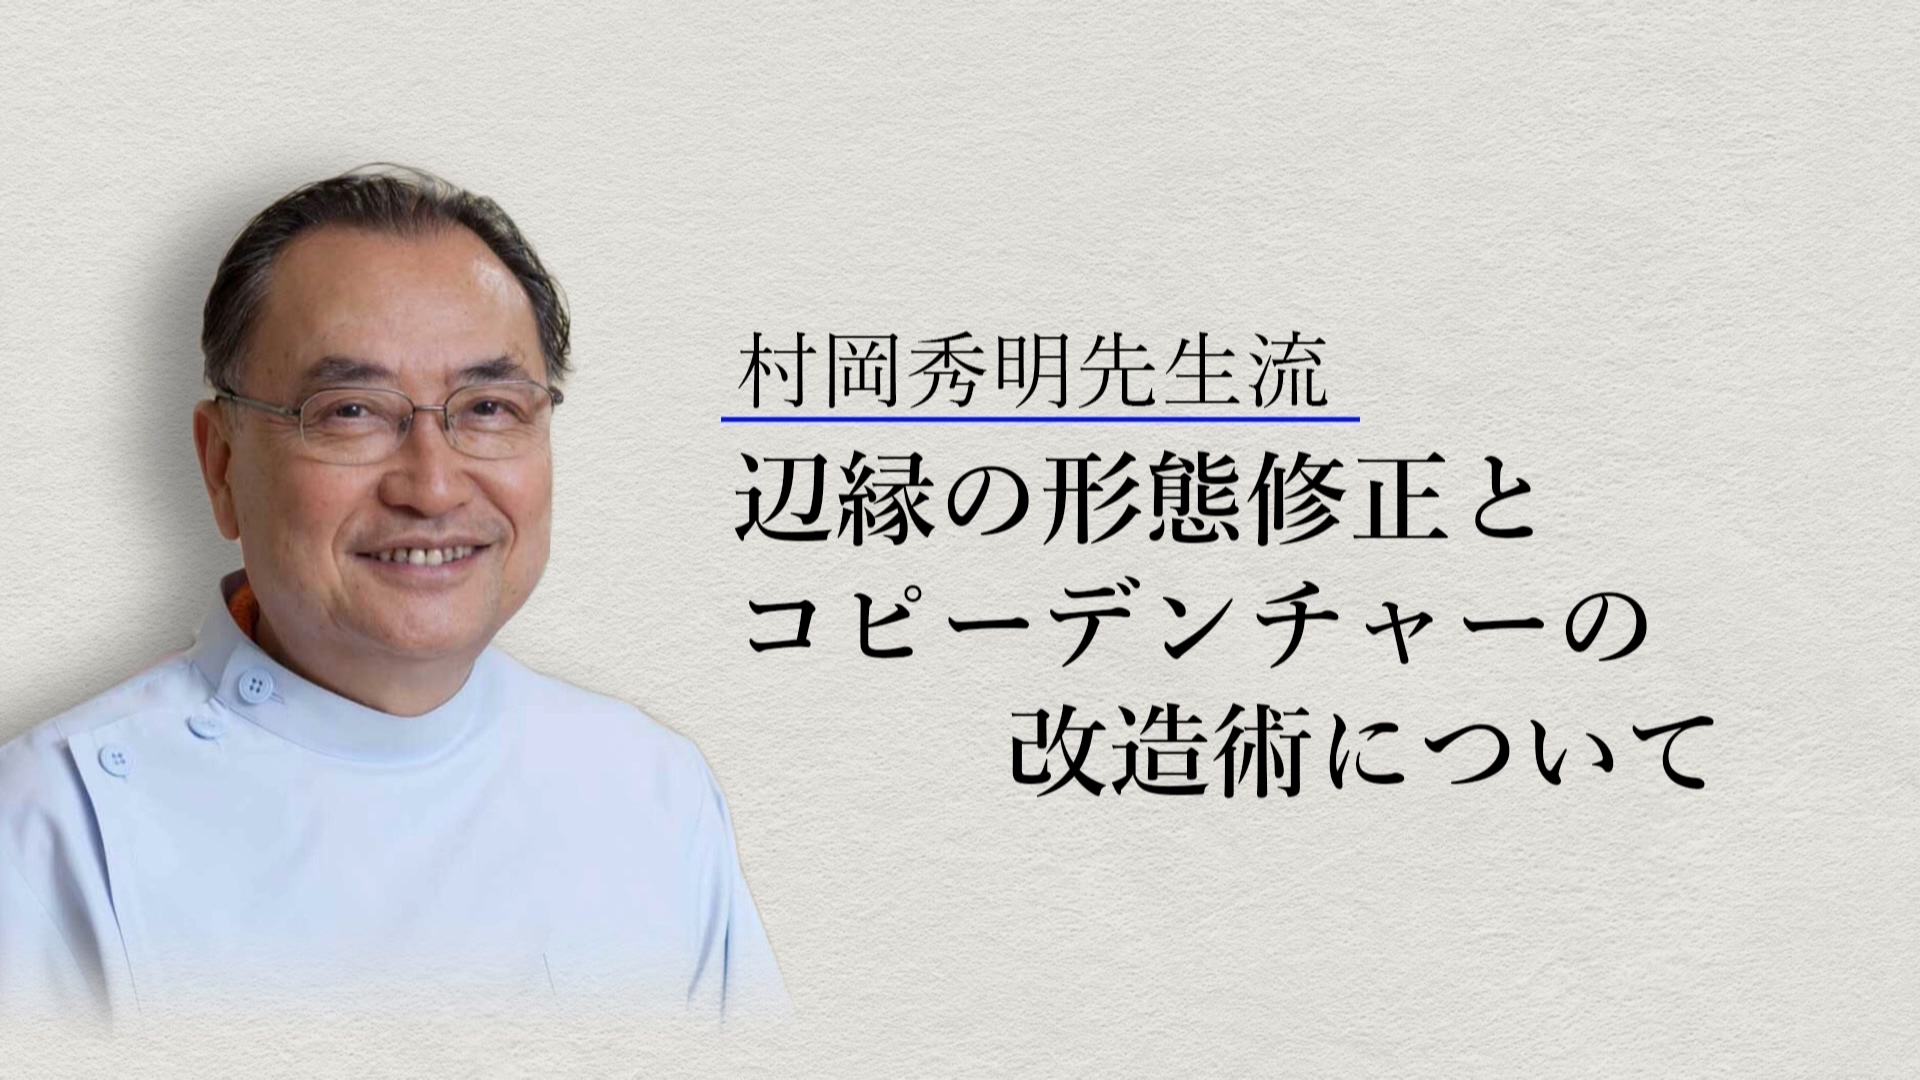 村岡秀明先生流　辺縁の形態修正とコピーデンチャーの改造術について